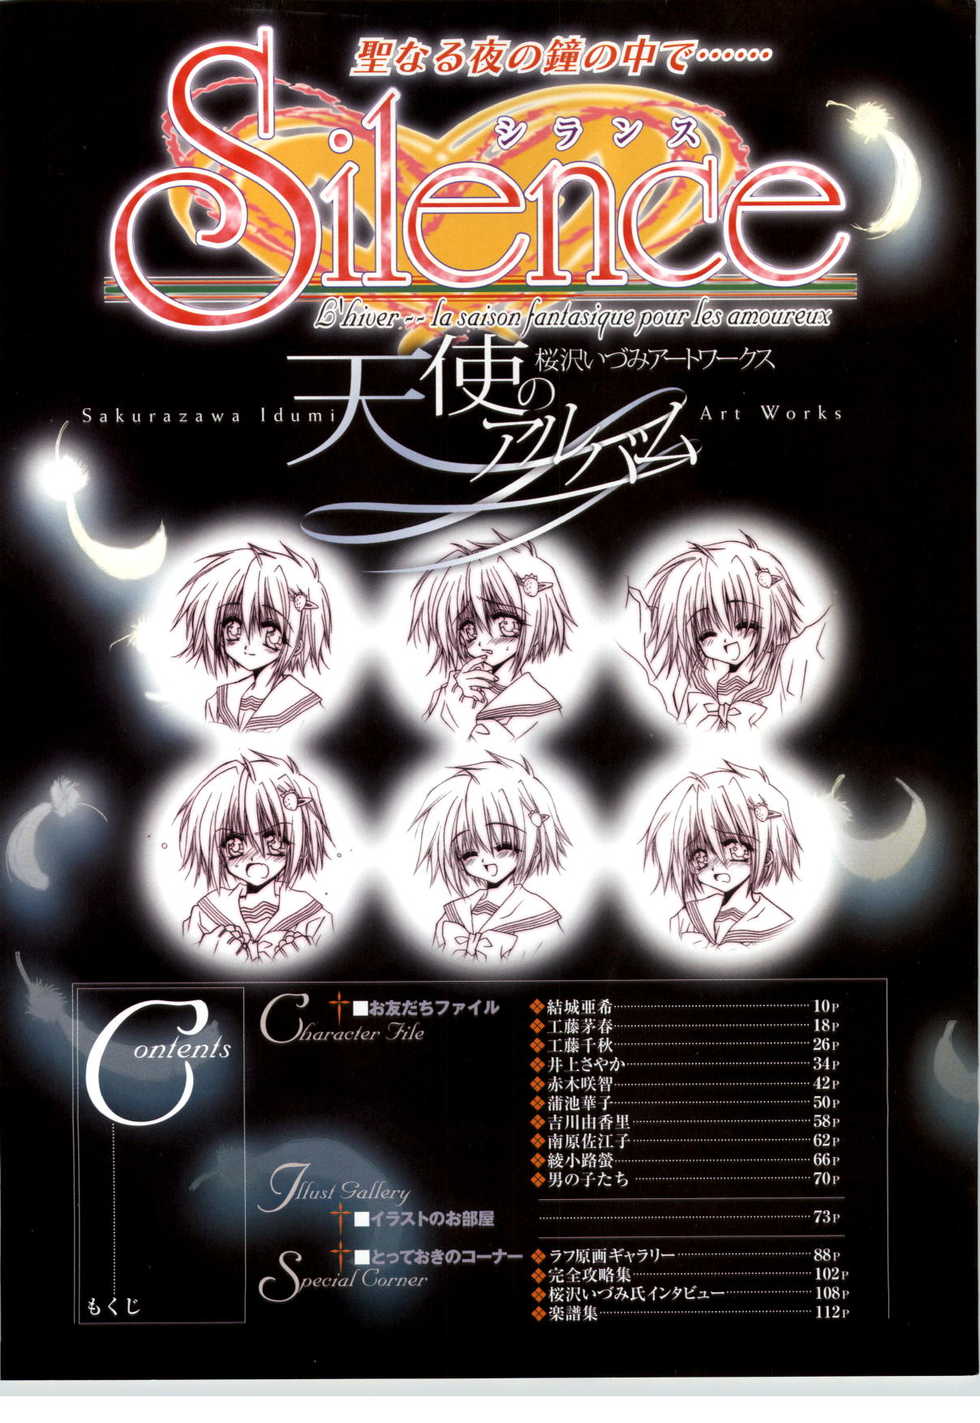 [Sakurazawa Izumi] Silence - Seinaru Yoru no Kane no Naka de... Tenshi no Album - Sakurazawa Izumi Artworks - Page 2